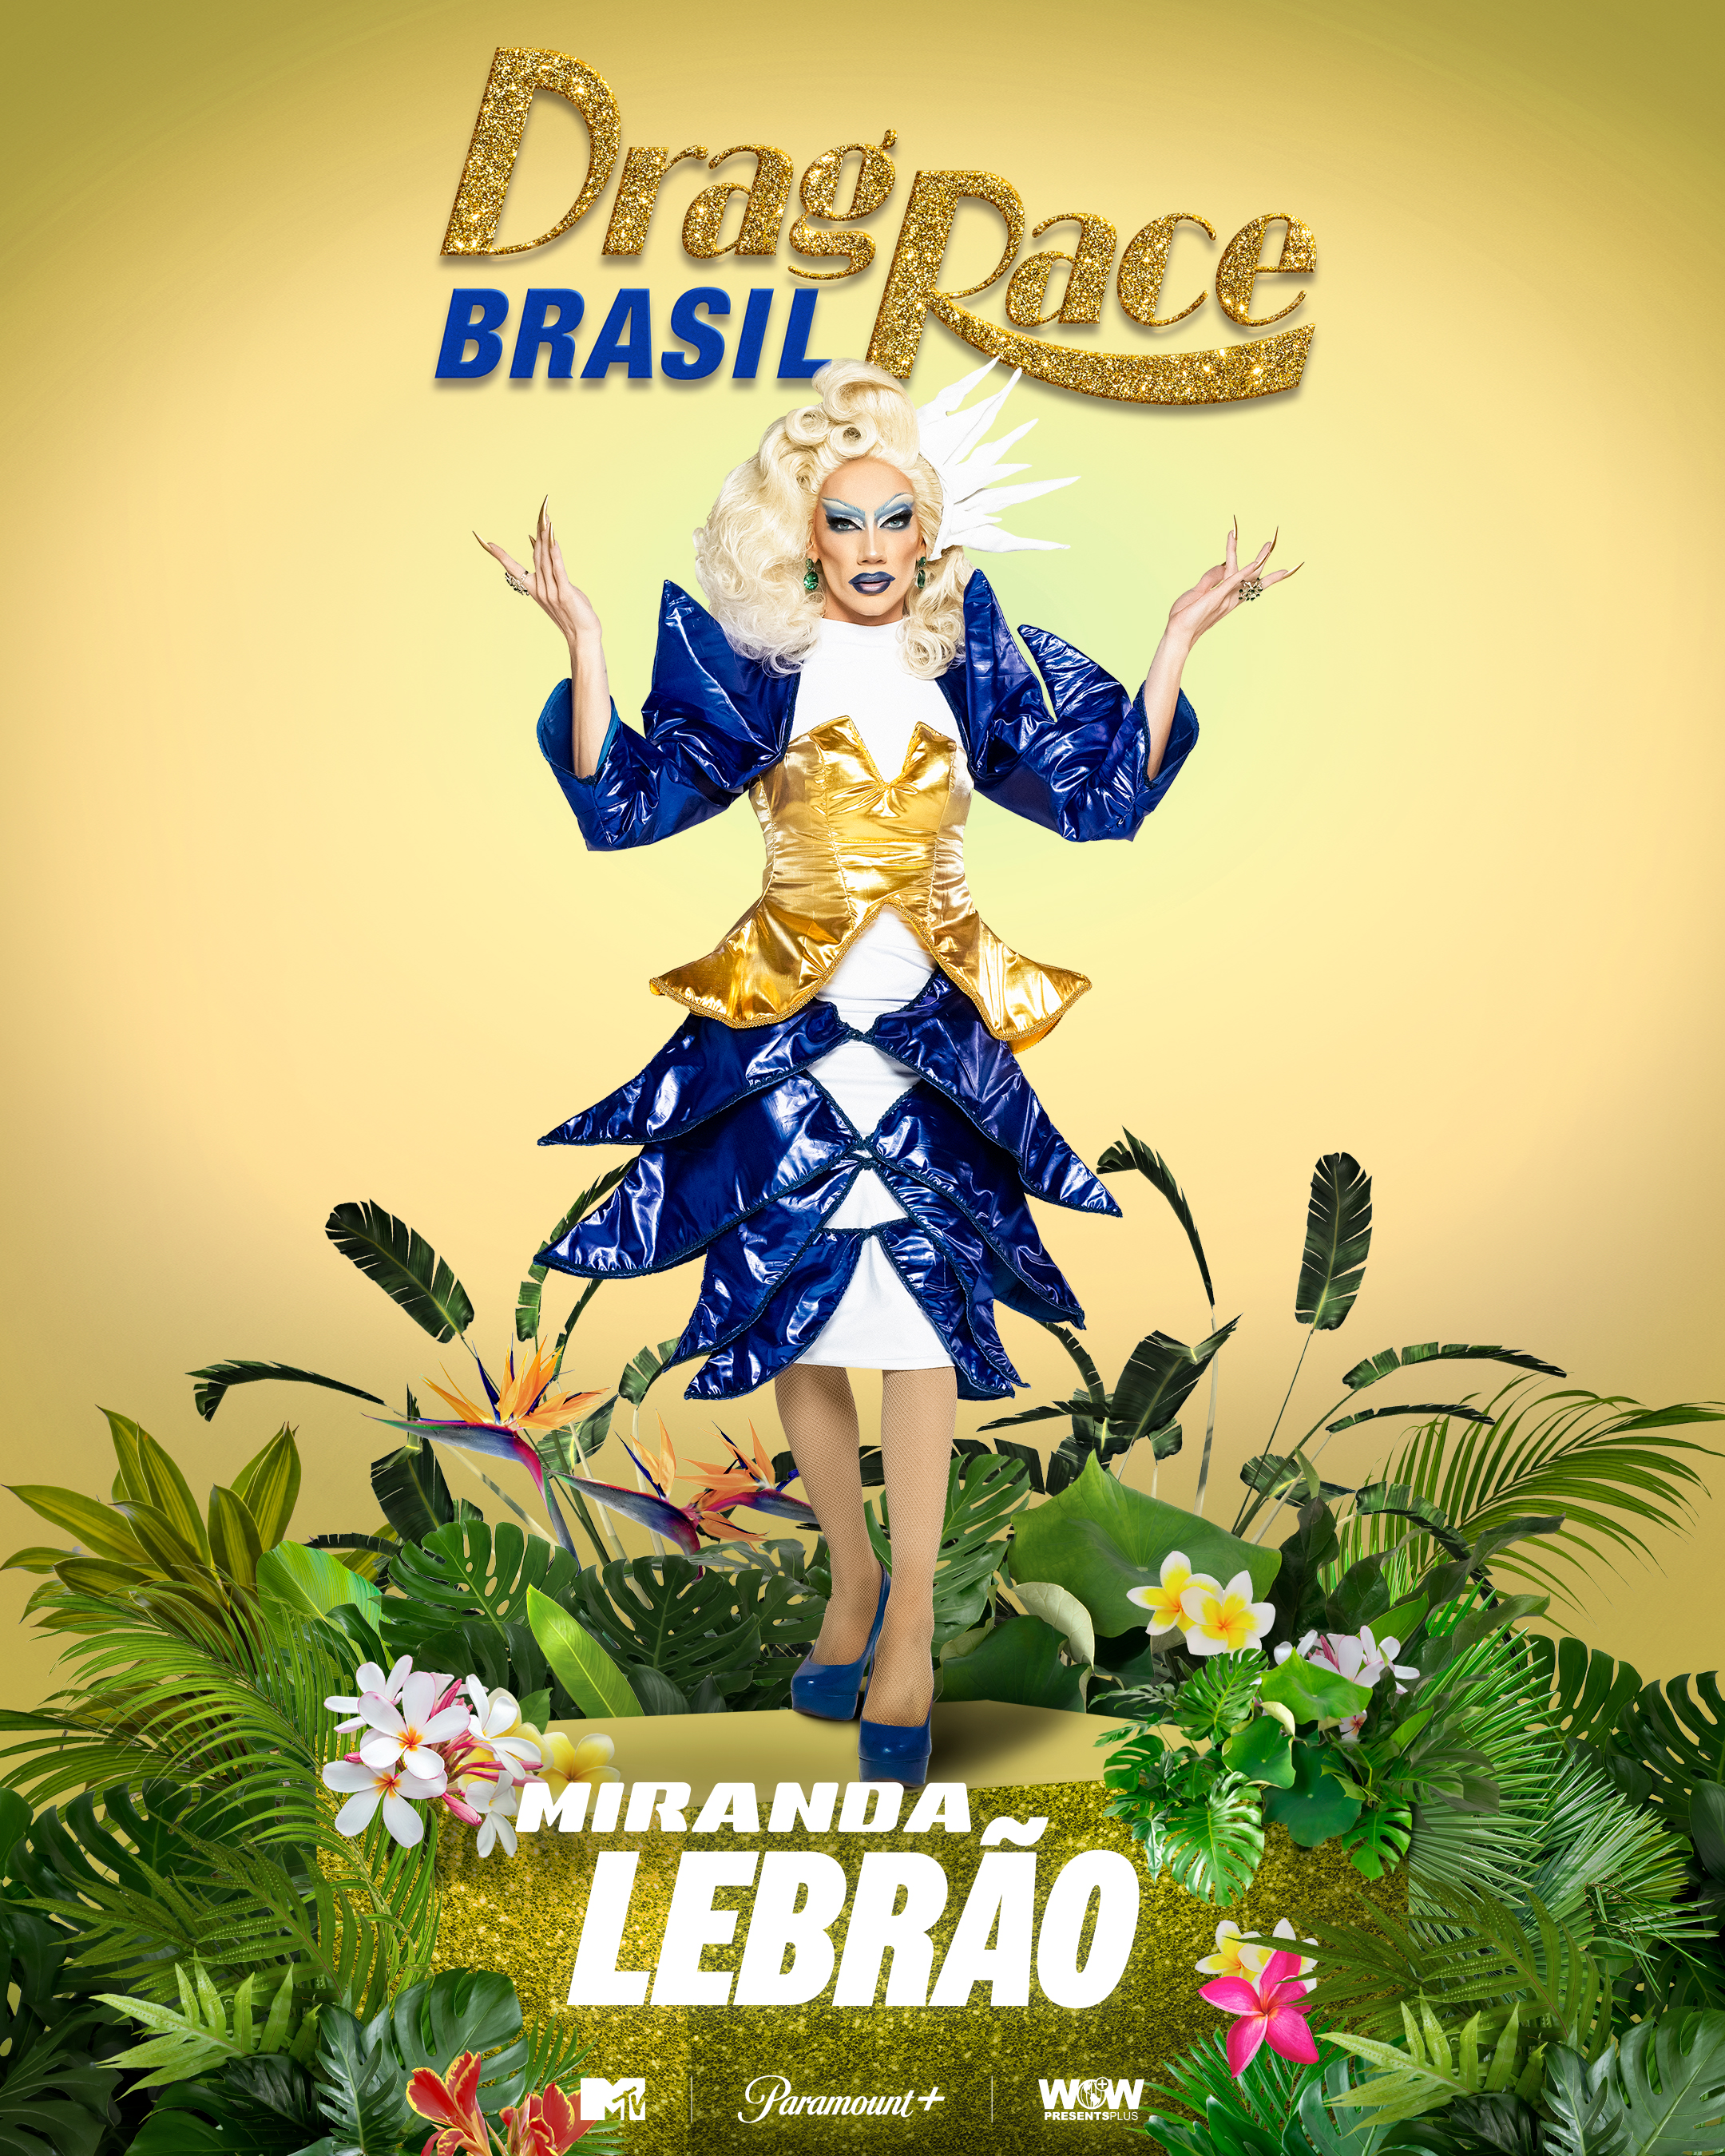 Tudo o que sabemos sobre Drag Race Brasil, versão nacional de RuPaul's Drag  Race